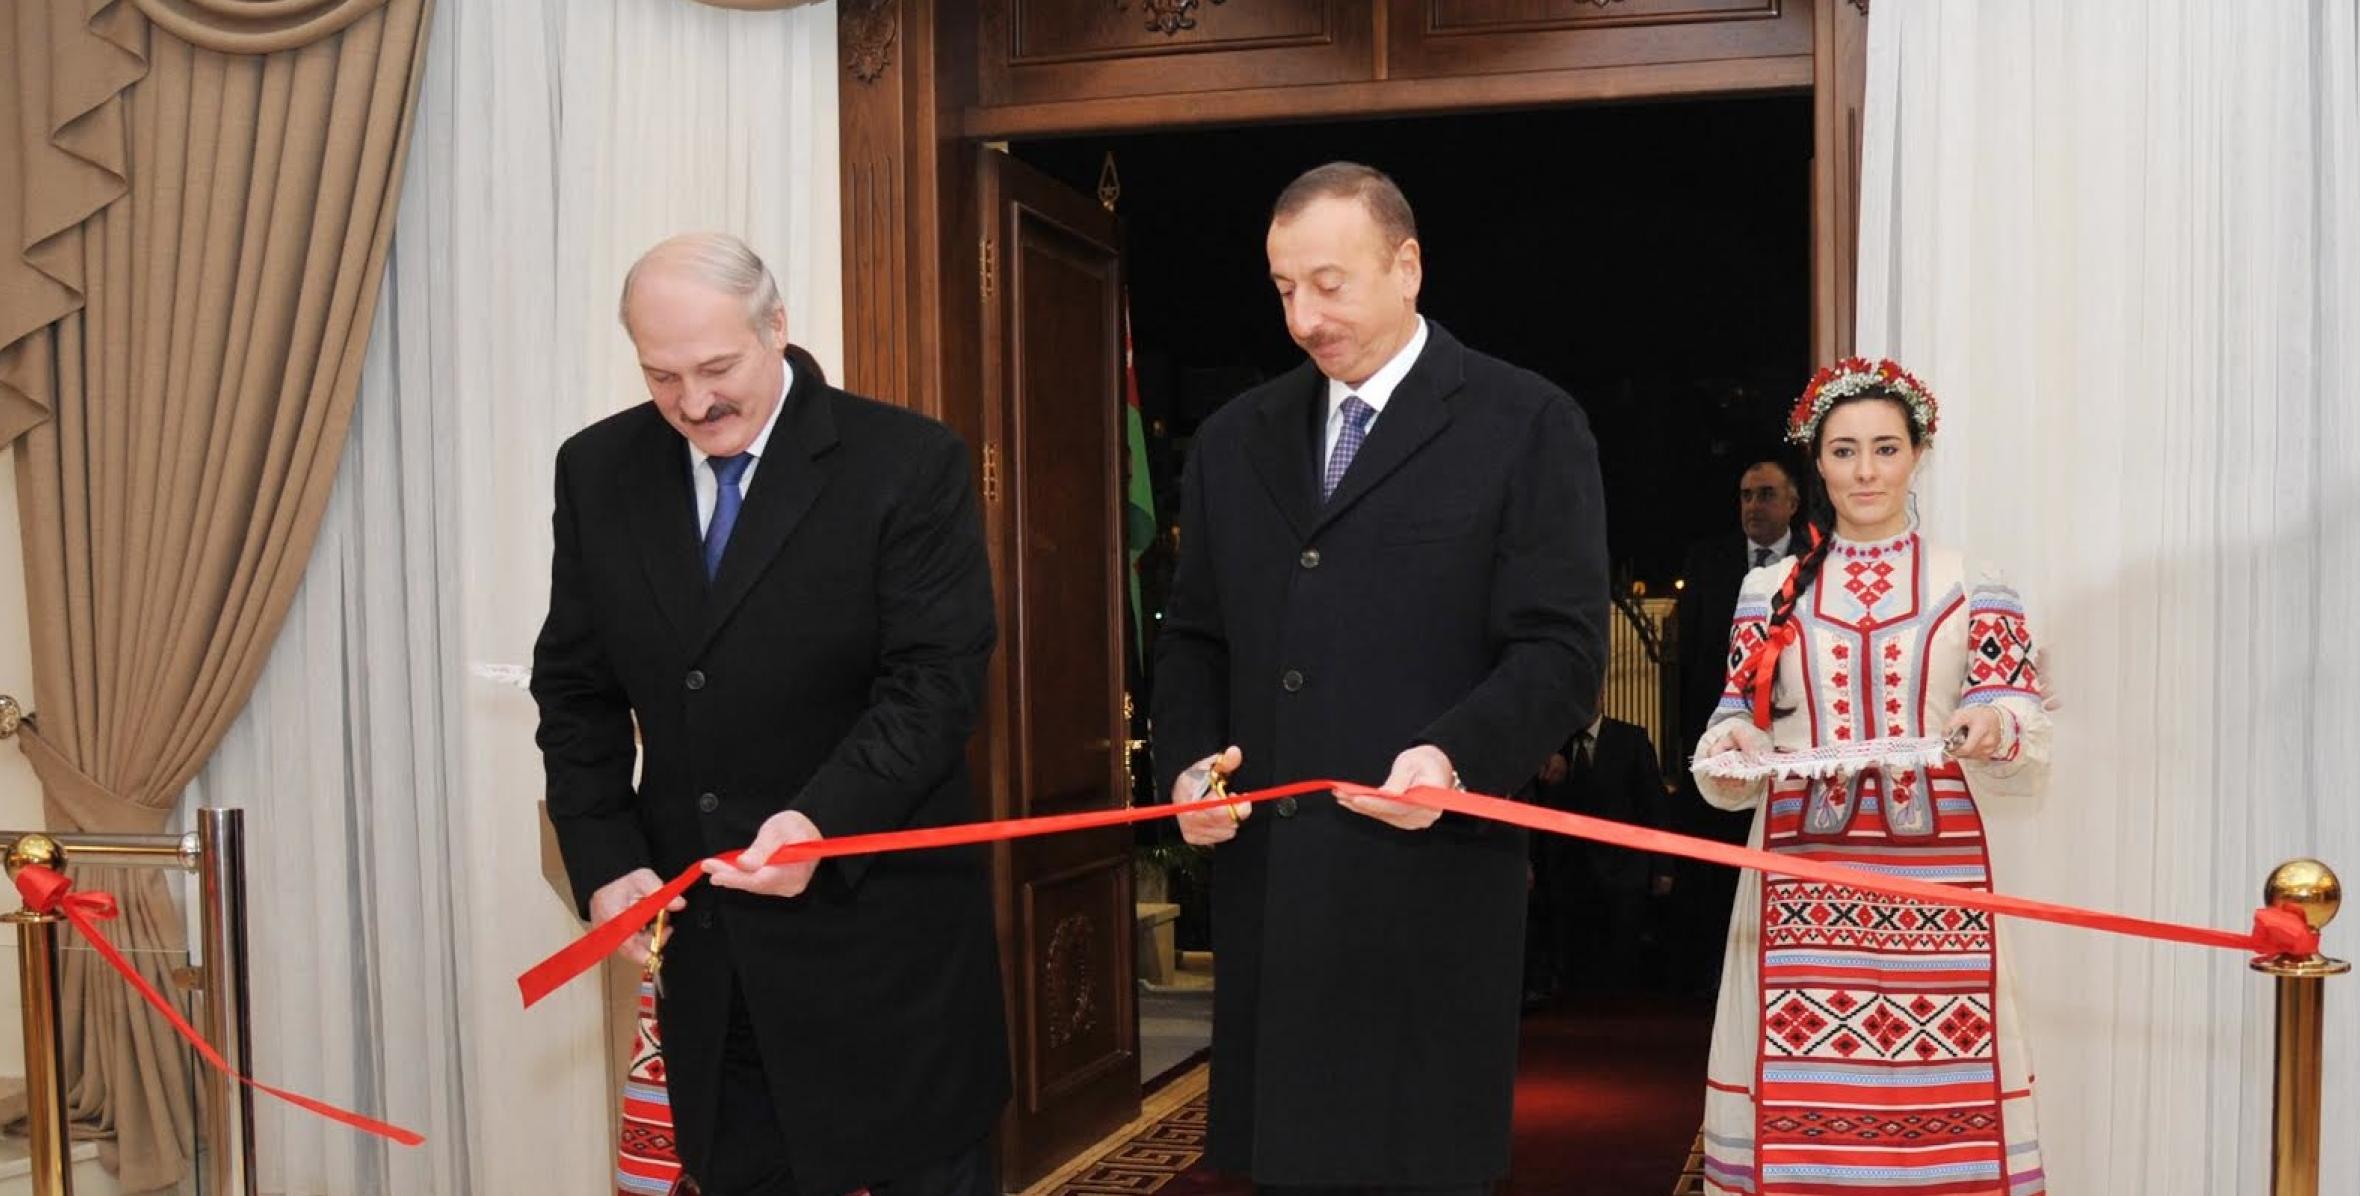 İlham Əliyev və Belarus Respublikasının Prezidenti Aleksandr Lukaşenko Belarus Respublikasının Azərbaycandakı səfirliyinin yeni binasının açılış mərasimində iştirak etmişlər